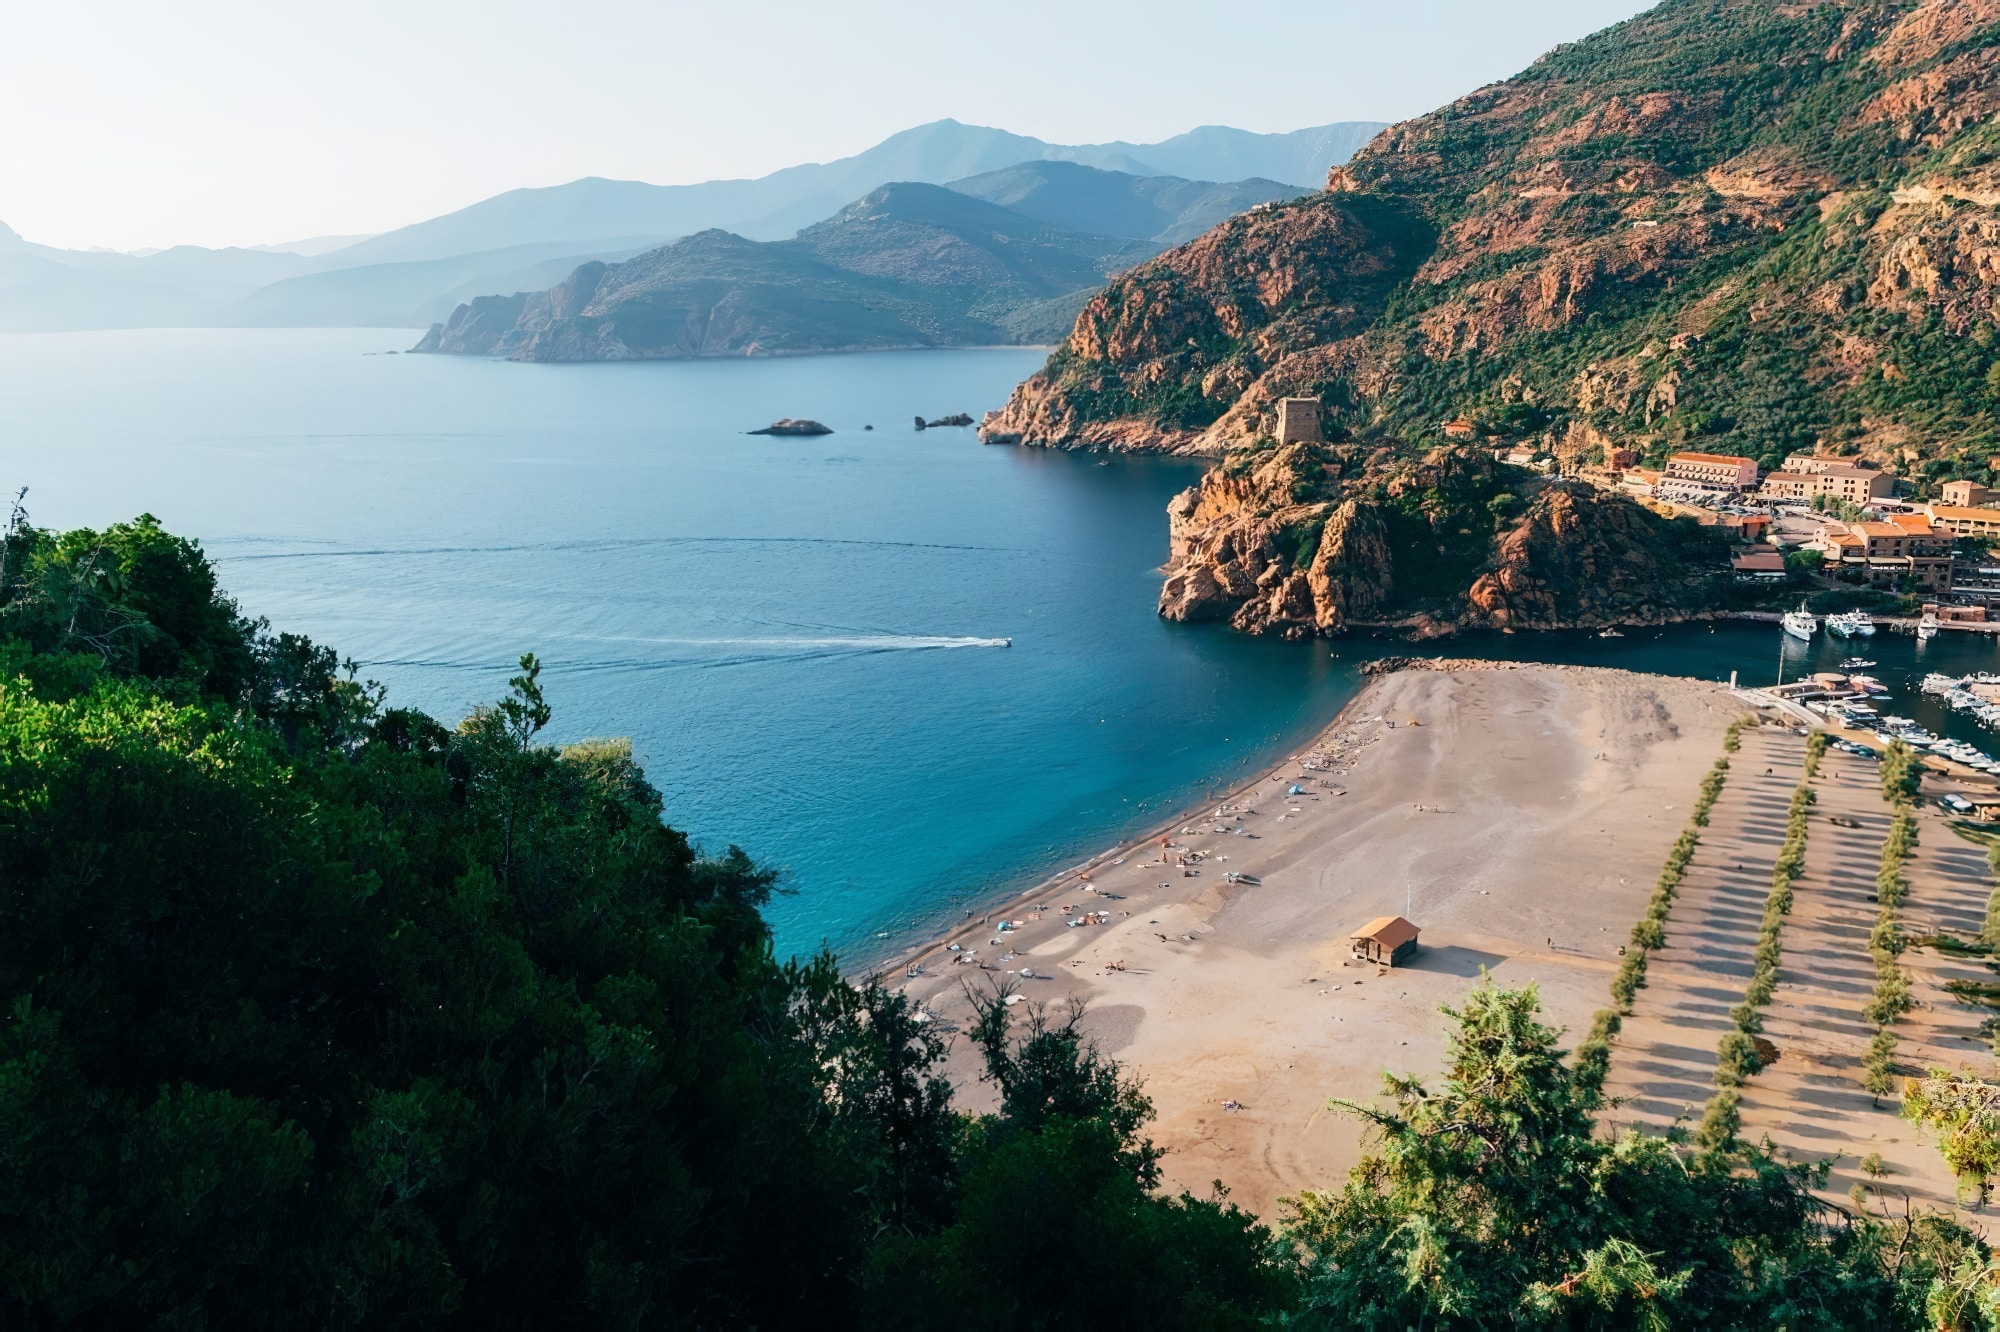 10 plages paradisiaques en Corse < La Corse Autrement